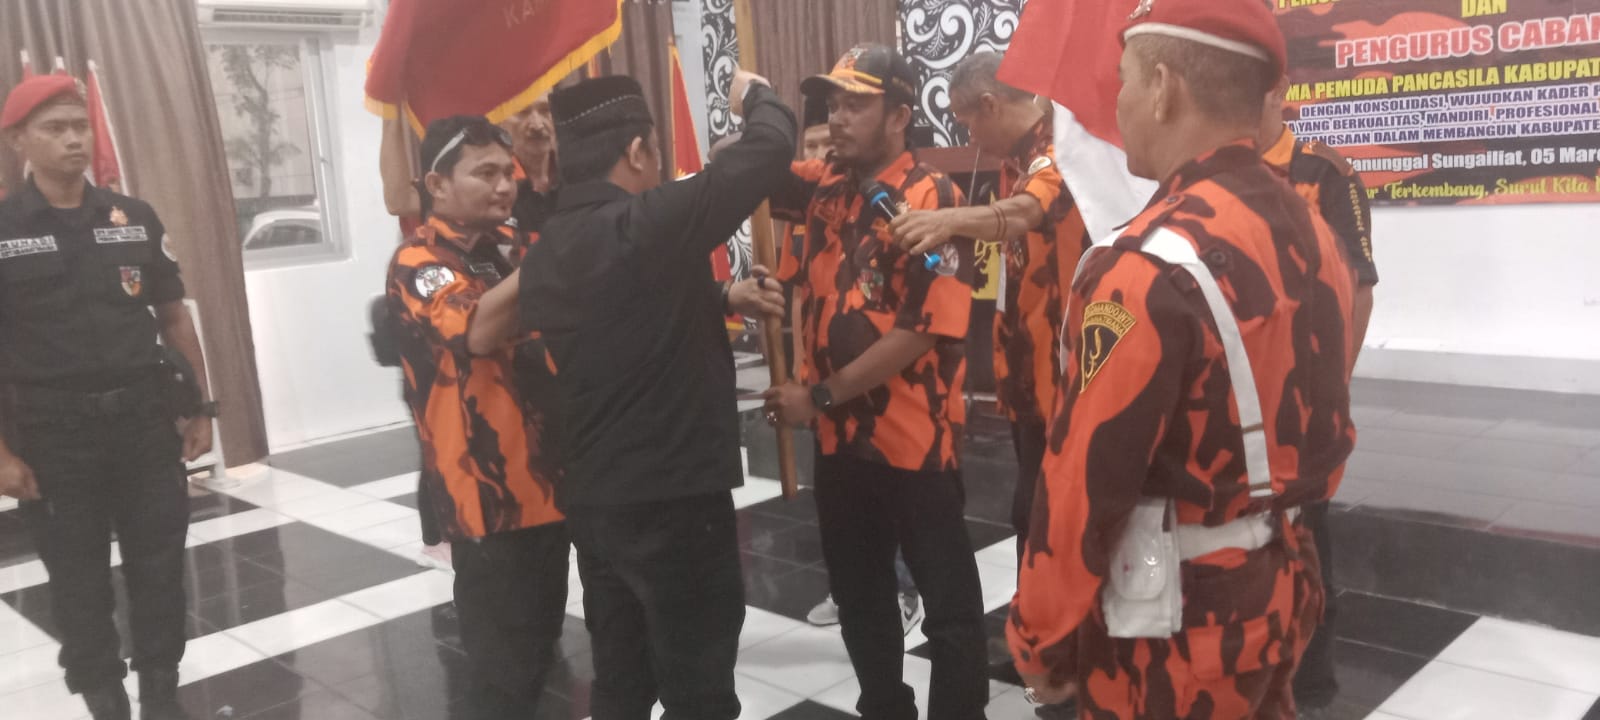 Muscab VI Ormas Pemuda Pancasila Bangka Resmi Digelar Dan Virdy Nandy Terpilih Menjadi Ketua MPC PP Bangka